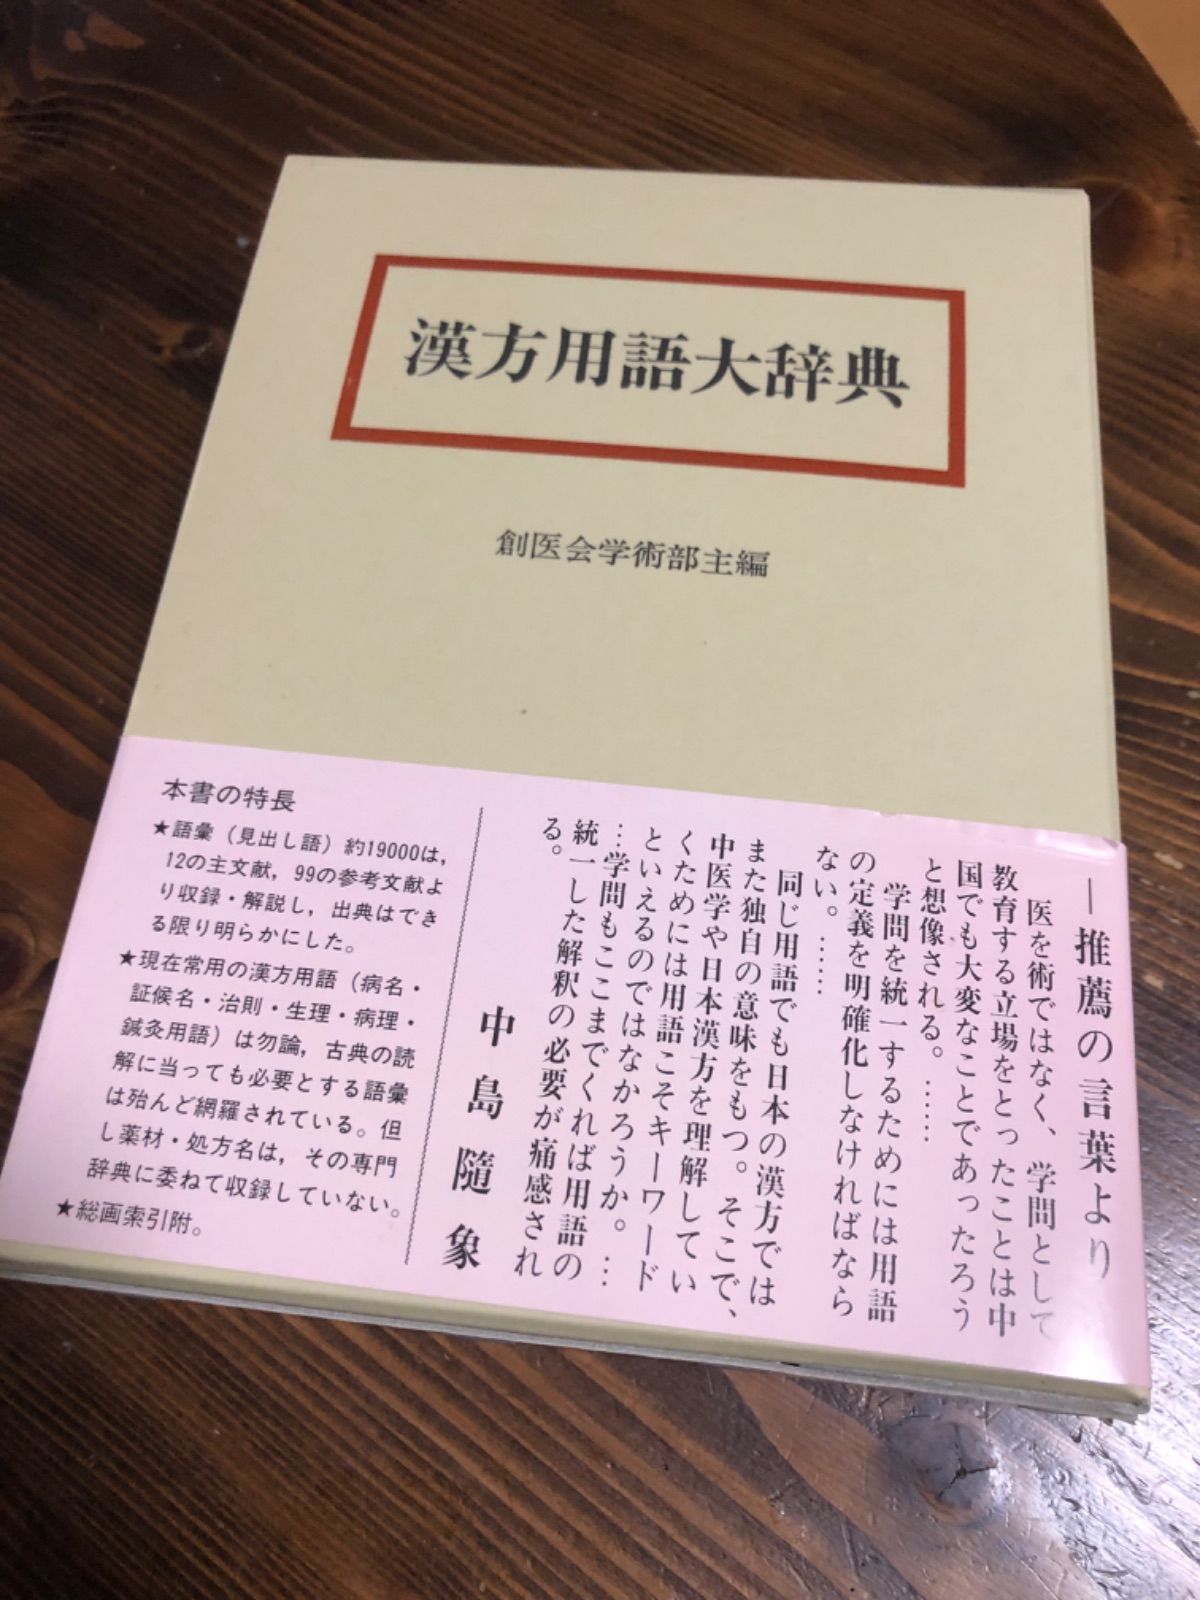 漢方用語大辞典 第三版 - 健康・医学